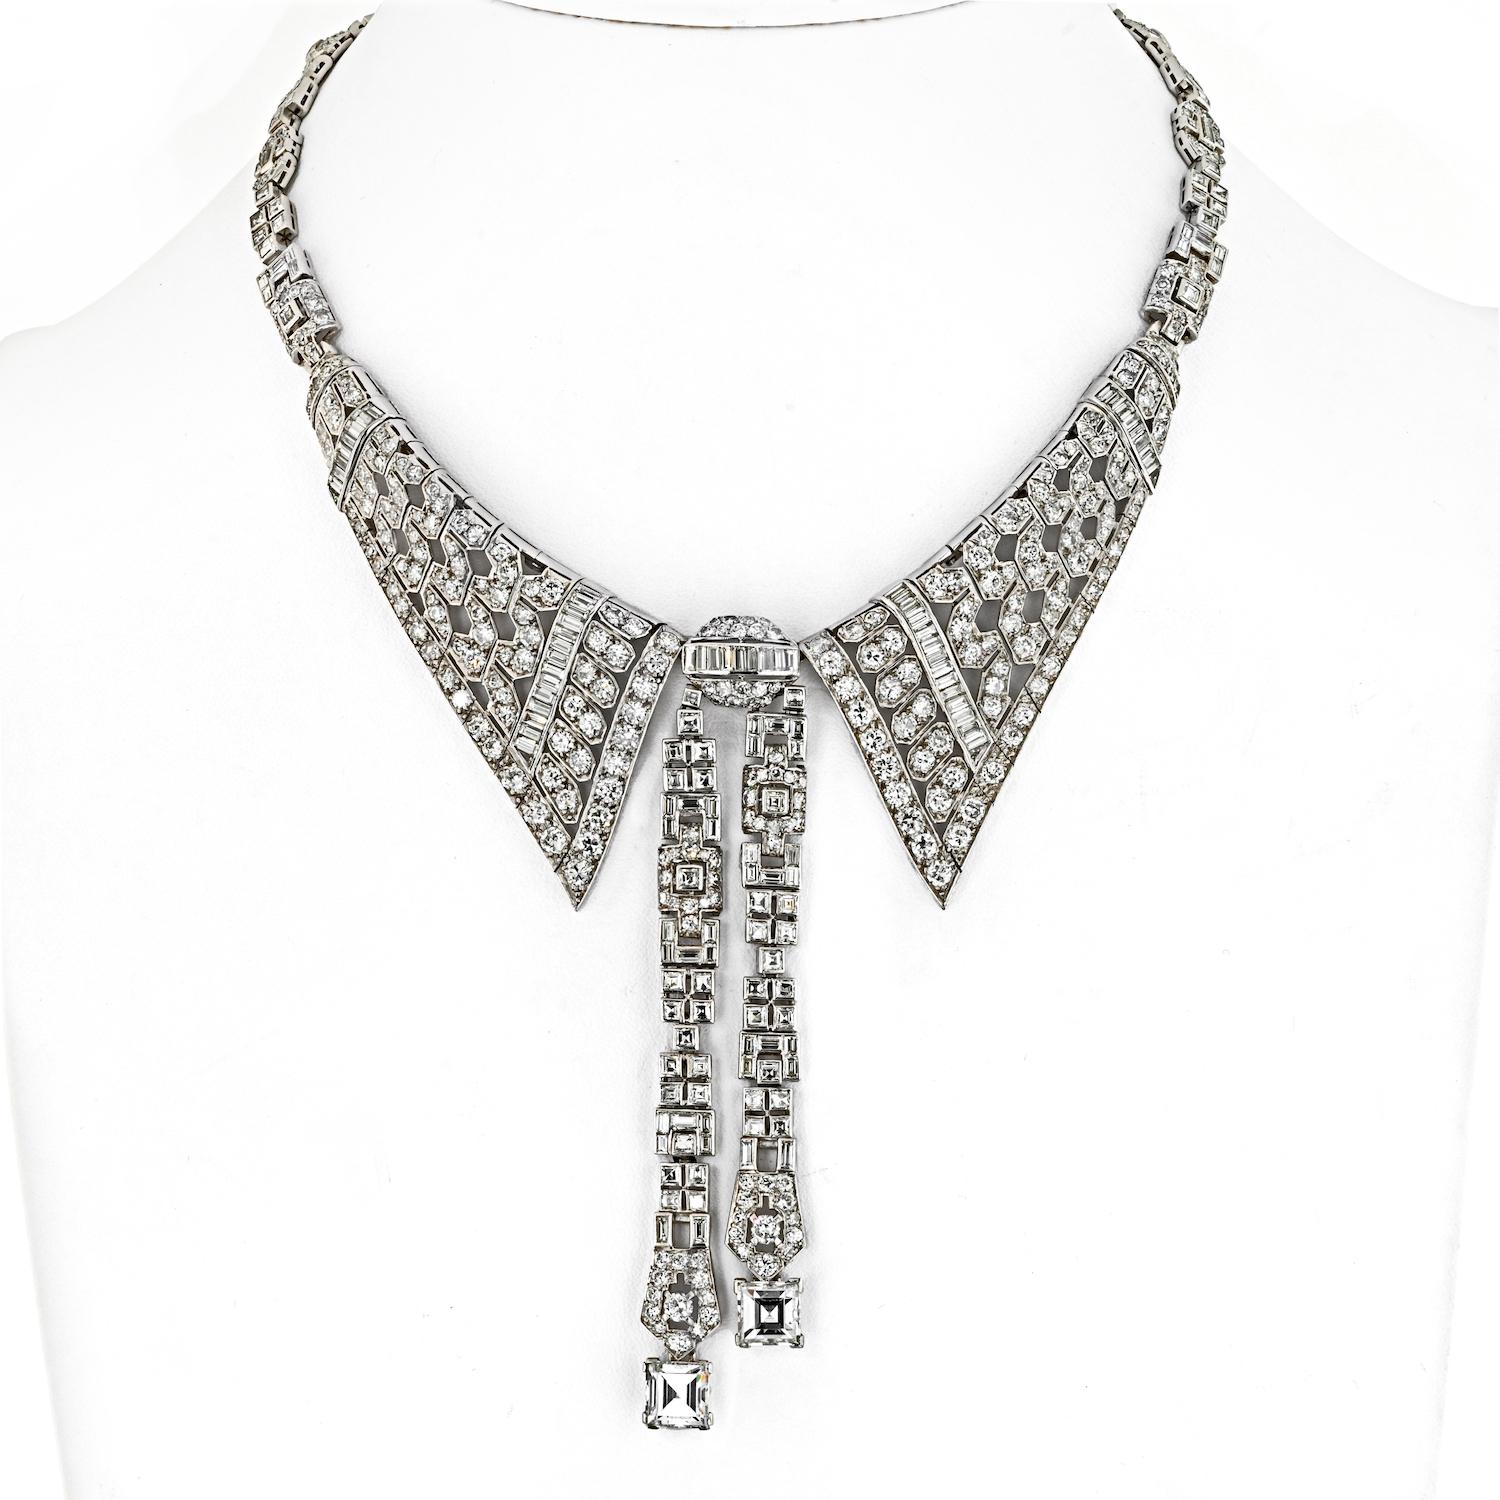 Die zeitlos schöne Eleganz dieser Platin-Halskette erinnert an einen raffinierten Hemdkragen. Dieses exquisite Art-Déco-Stück hat ein Lavalier-Design, das mit einer Reihe von Diamanten im Mischschliff verziert ist. Die akribische Handwerkskunst